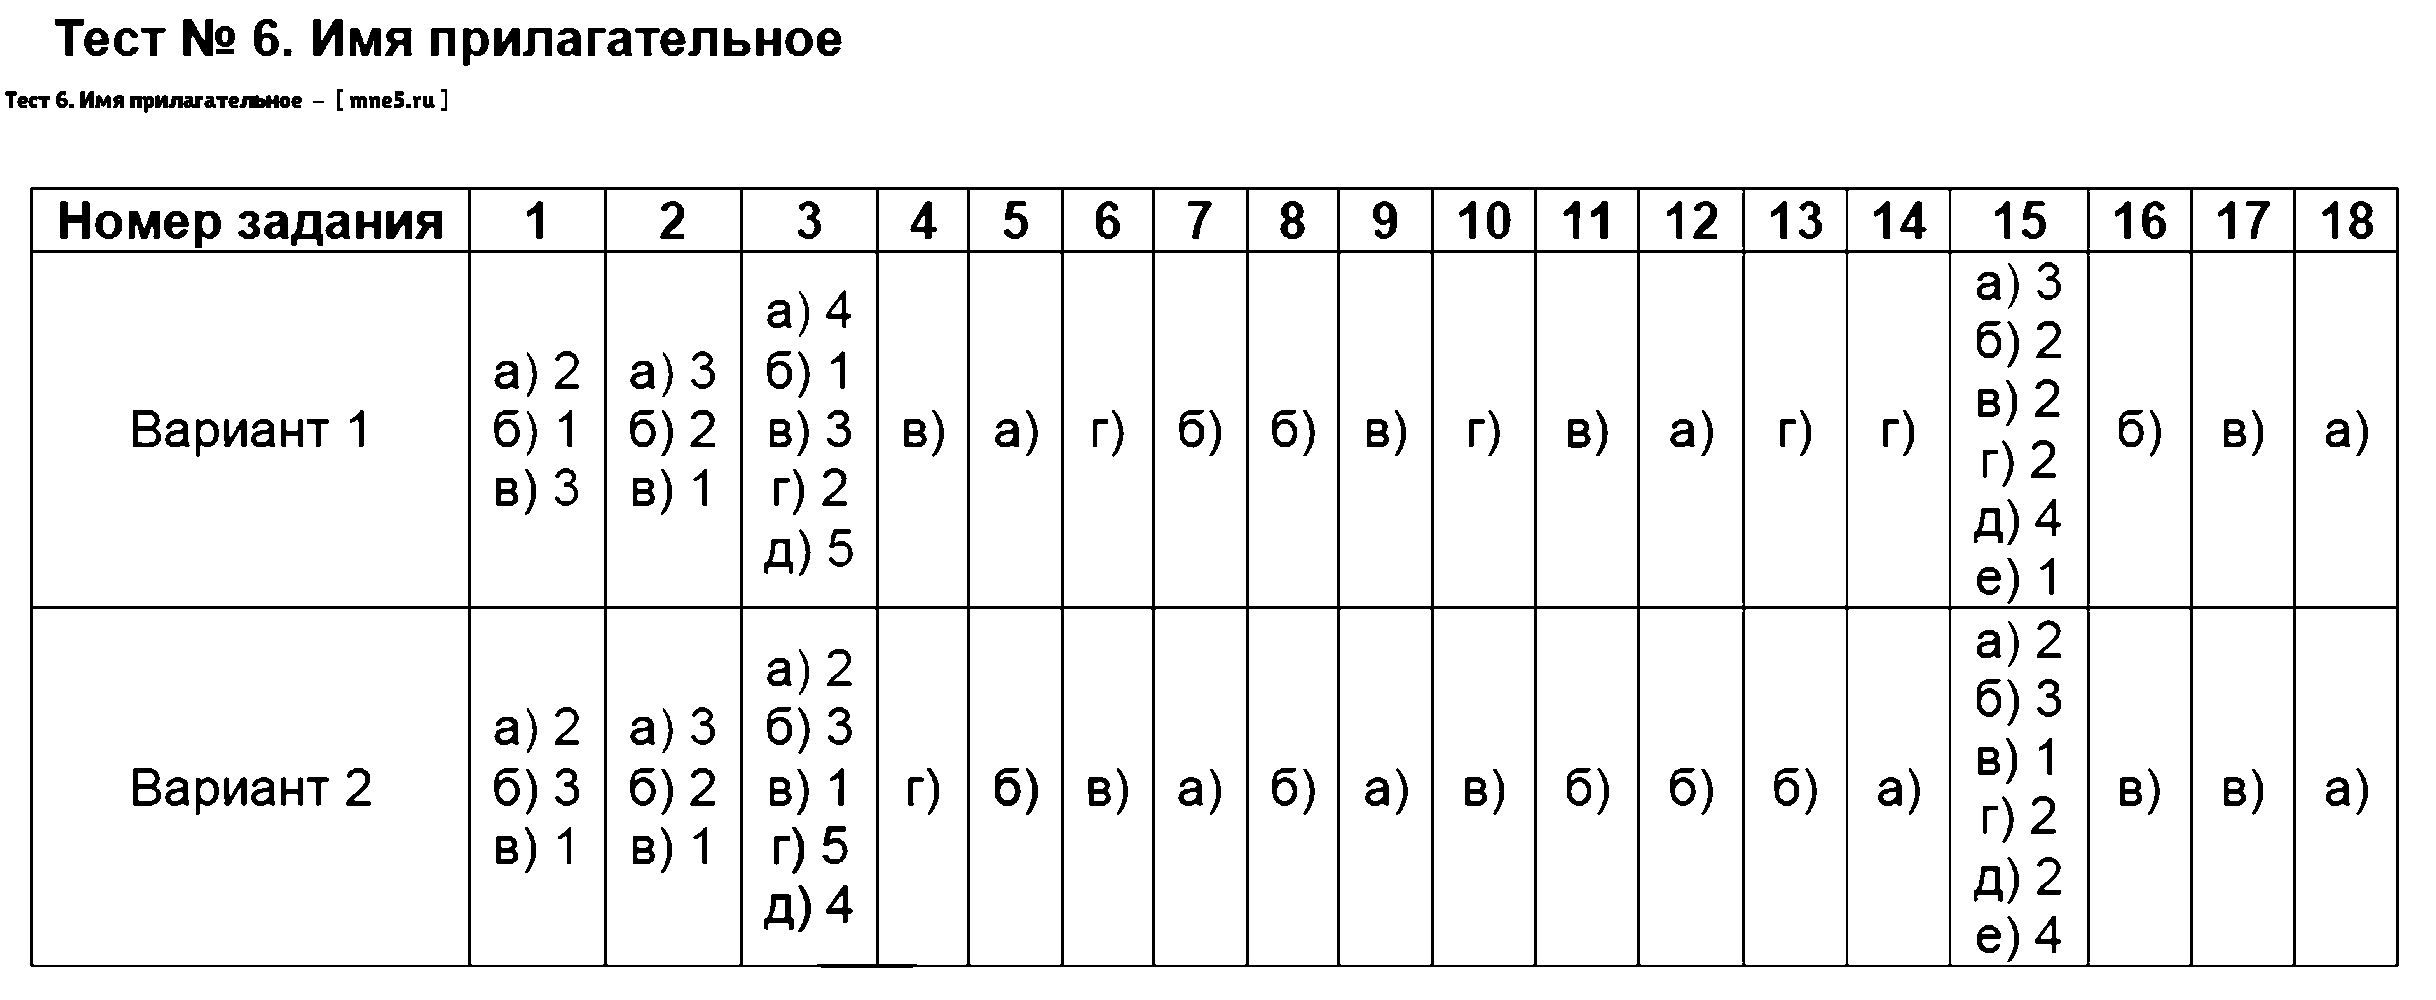 ГДЗ Русский язык 6 класс - Тест 6. Имя прилагательное